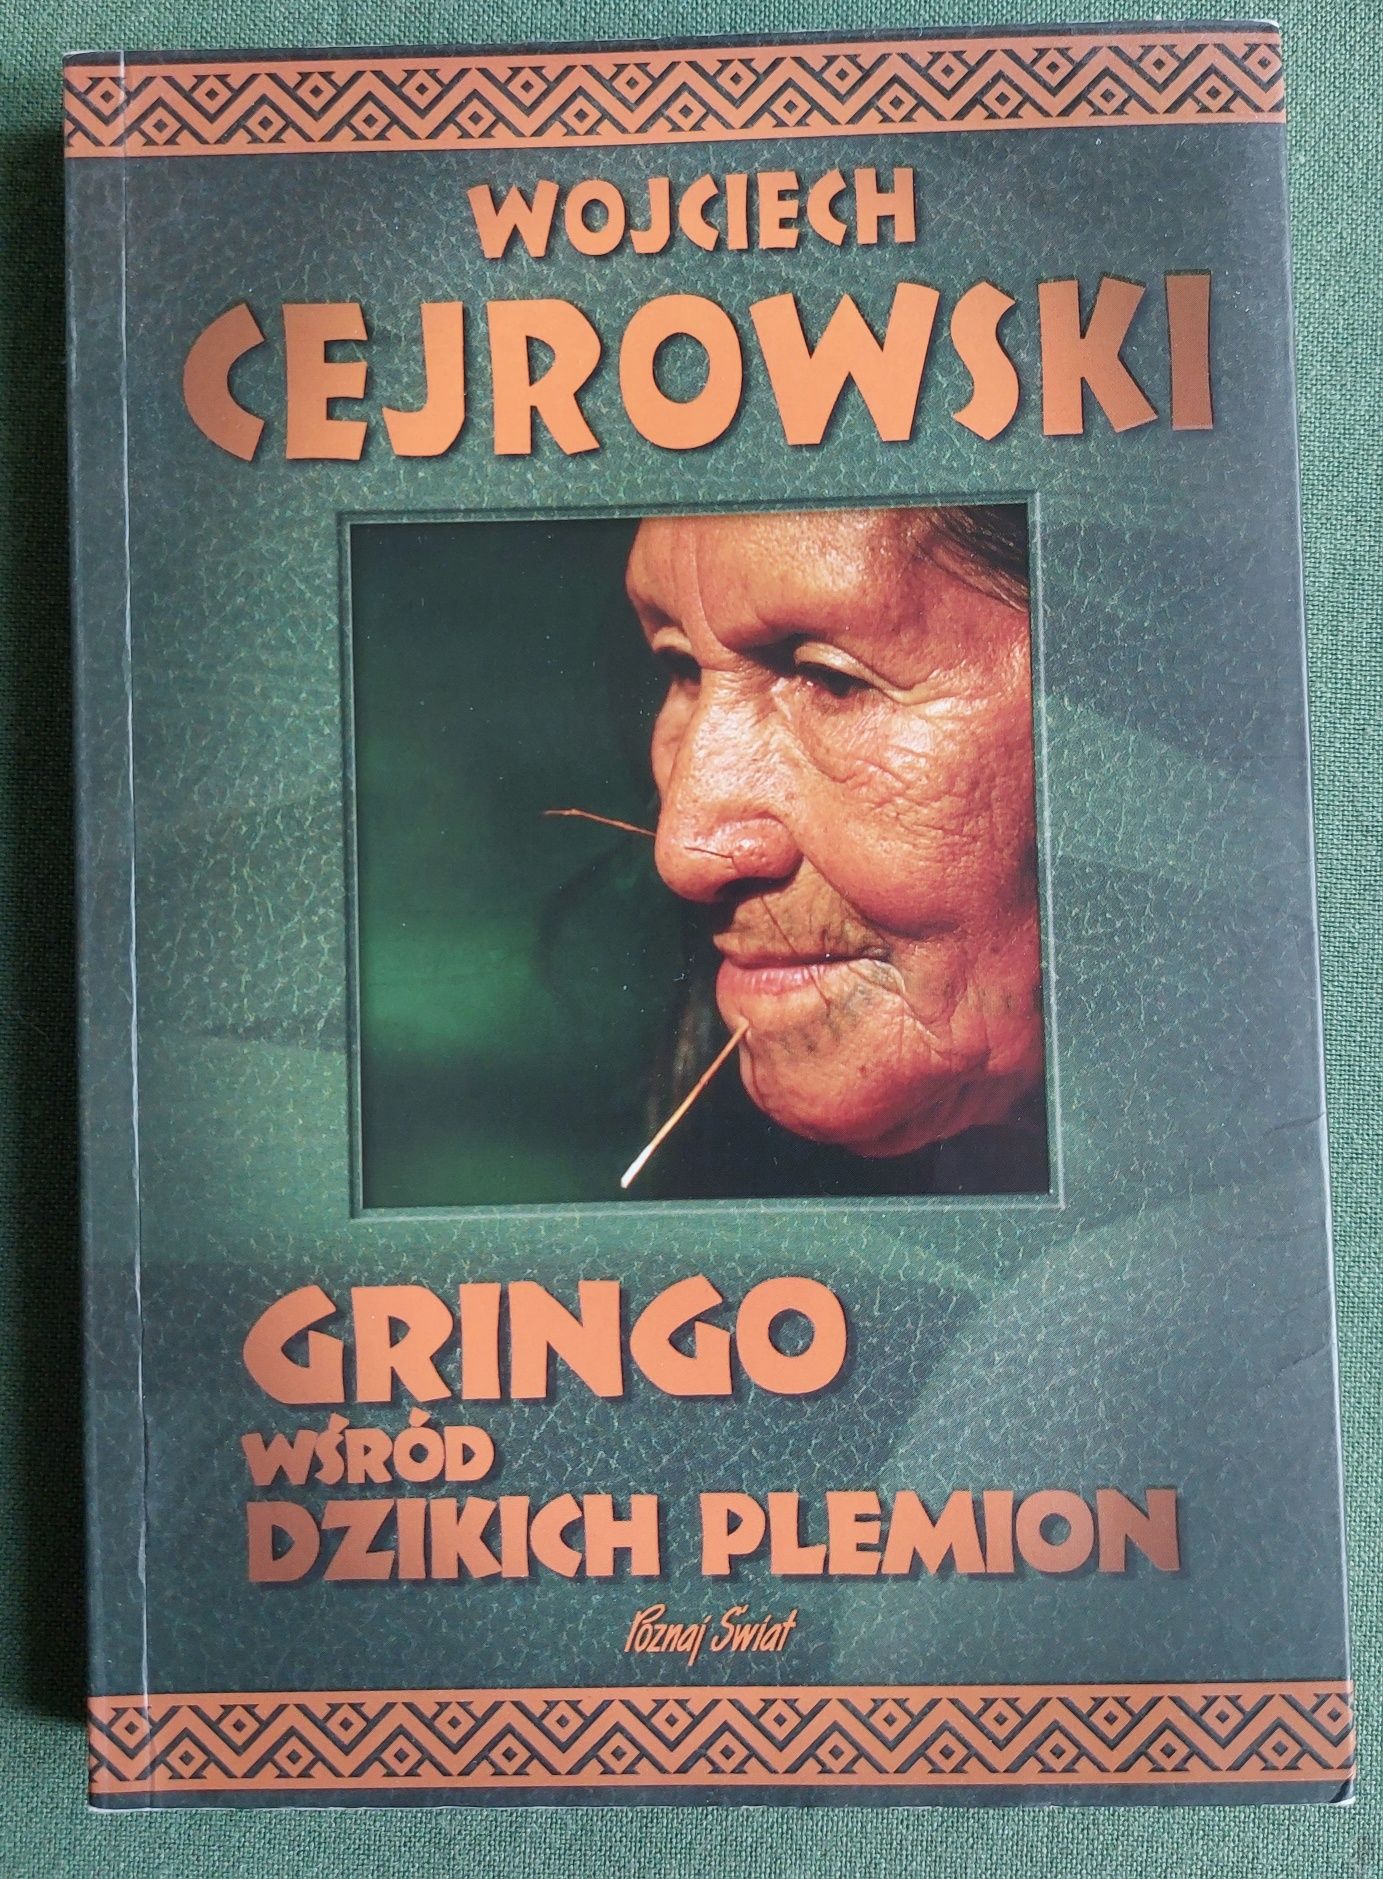 Gringo wśród dzikich plemion Cejrowski miękka